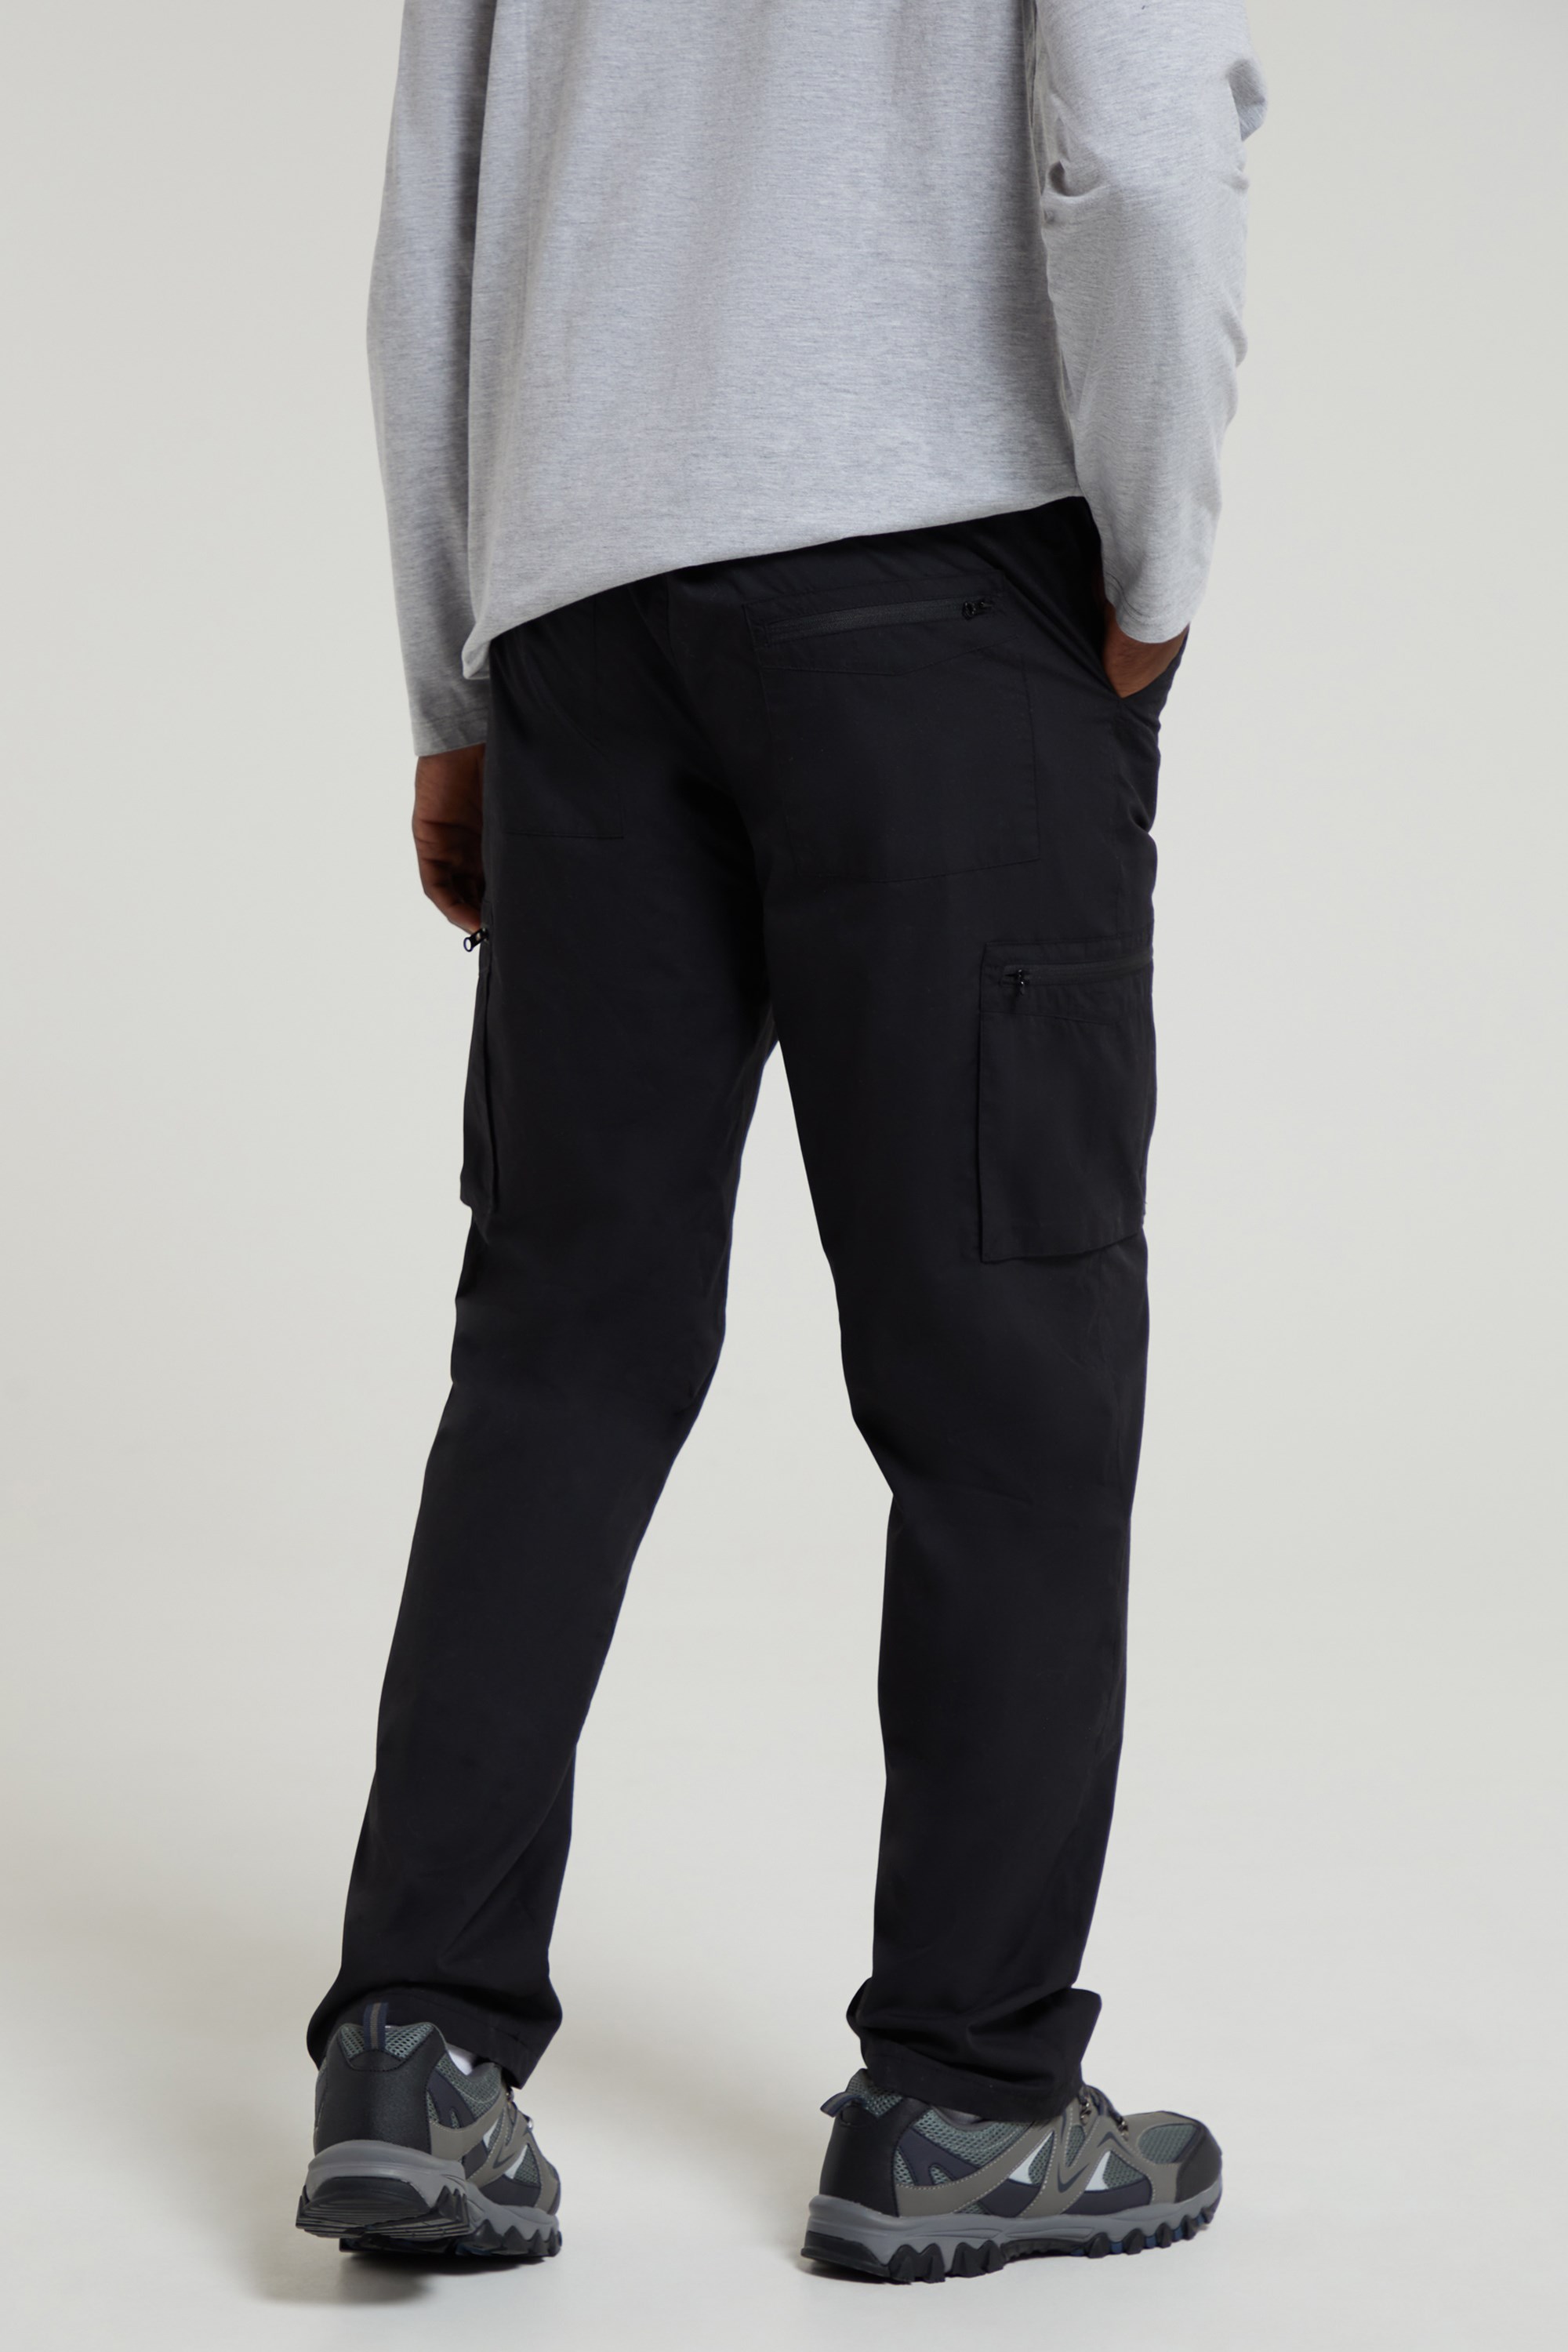 Men Fleece Lined Waterproof Thermal Trousers Joggers Winter Warm Athletic  Pants | eBay